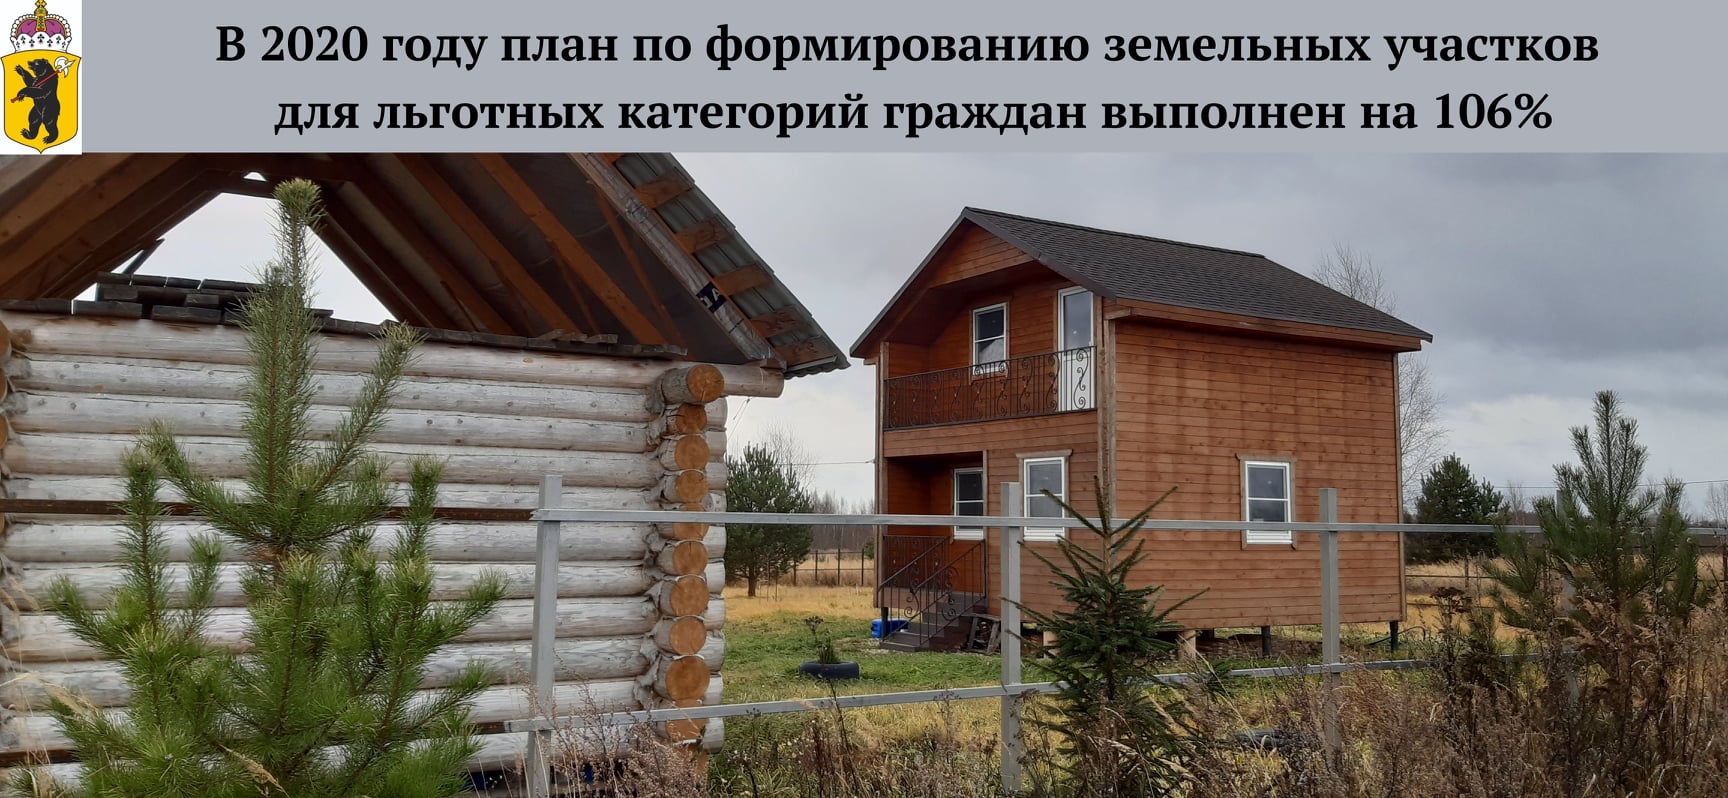 Ярославские семьи получили более 800 участков: в регионе подвели итоги года в сфере имущественных и земельных отношений